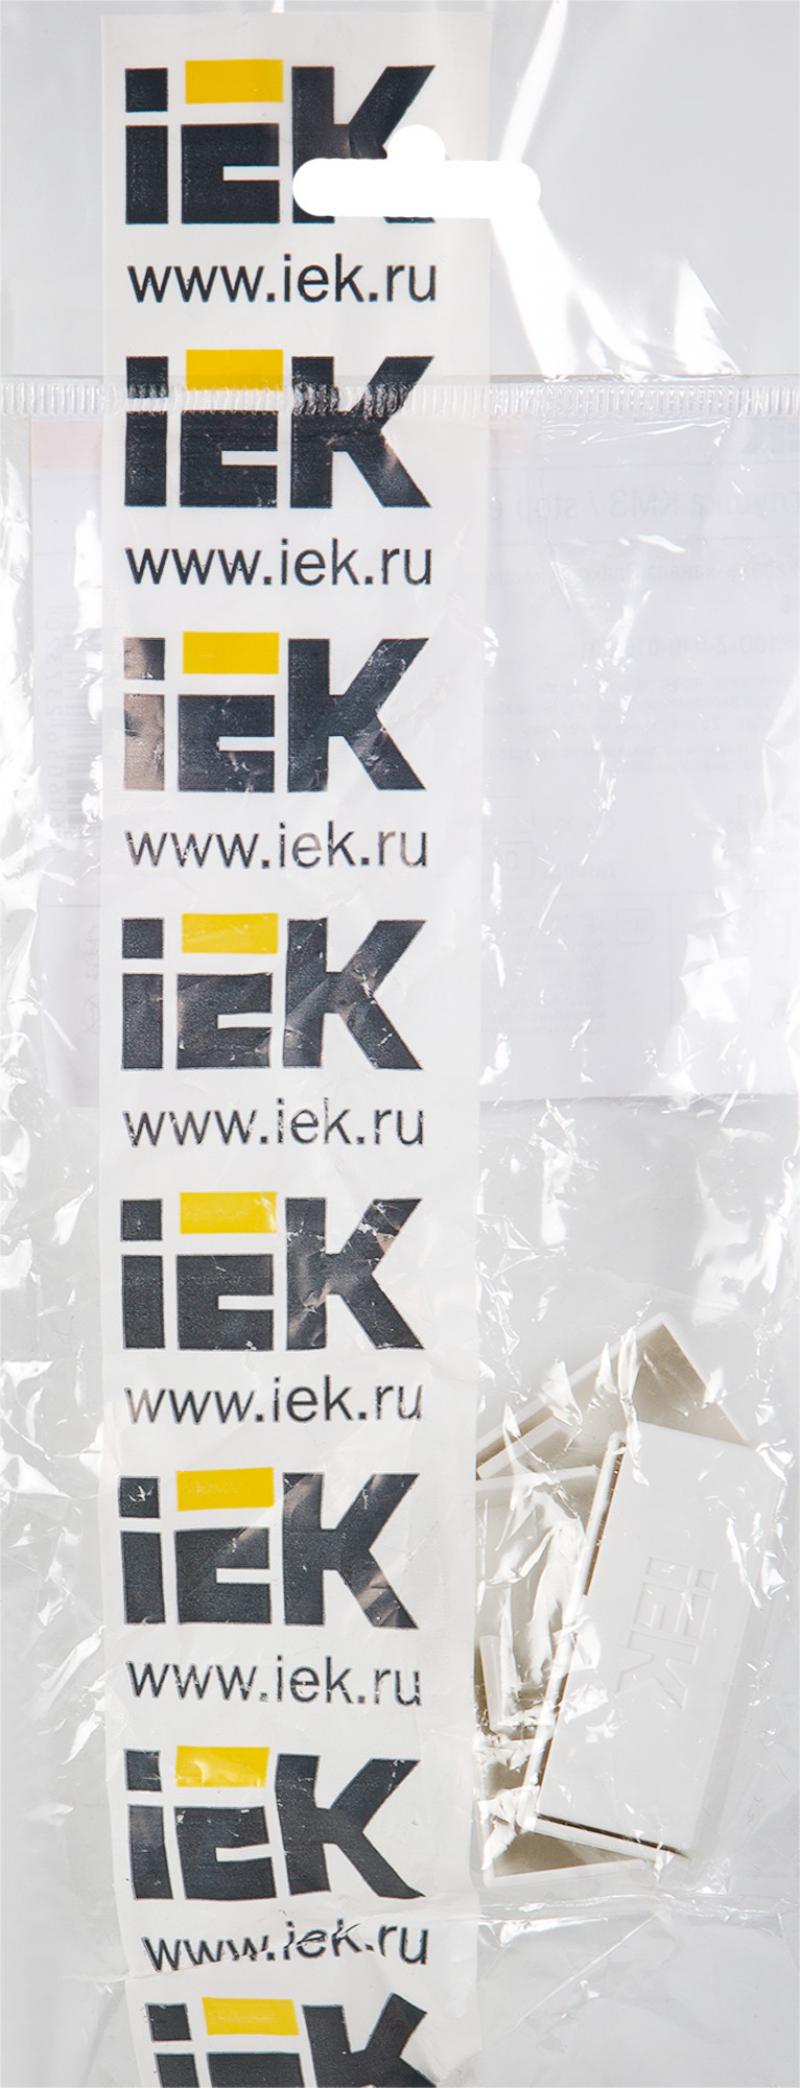 Заглушка для кабель-канала IEK КМЗ 40х16 мм цвет белый 4 шт.